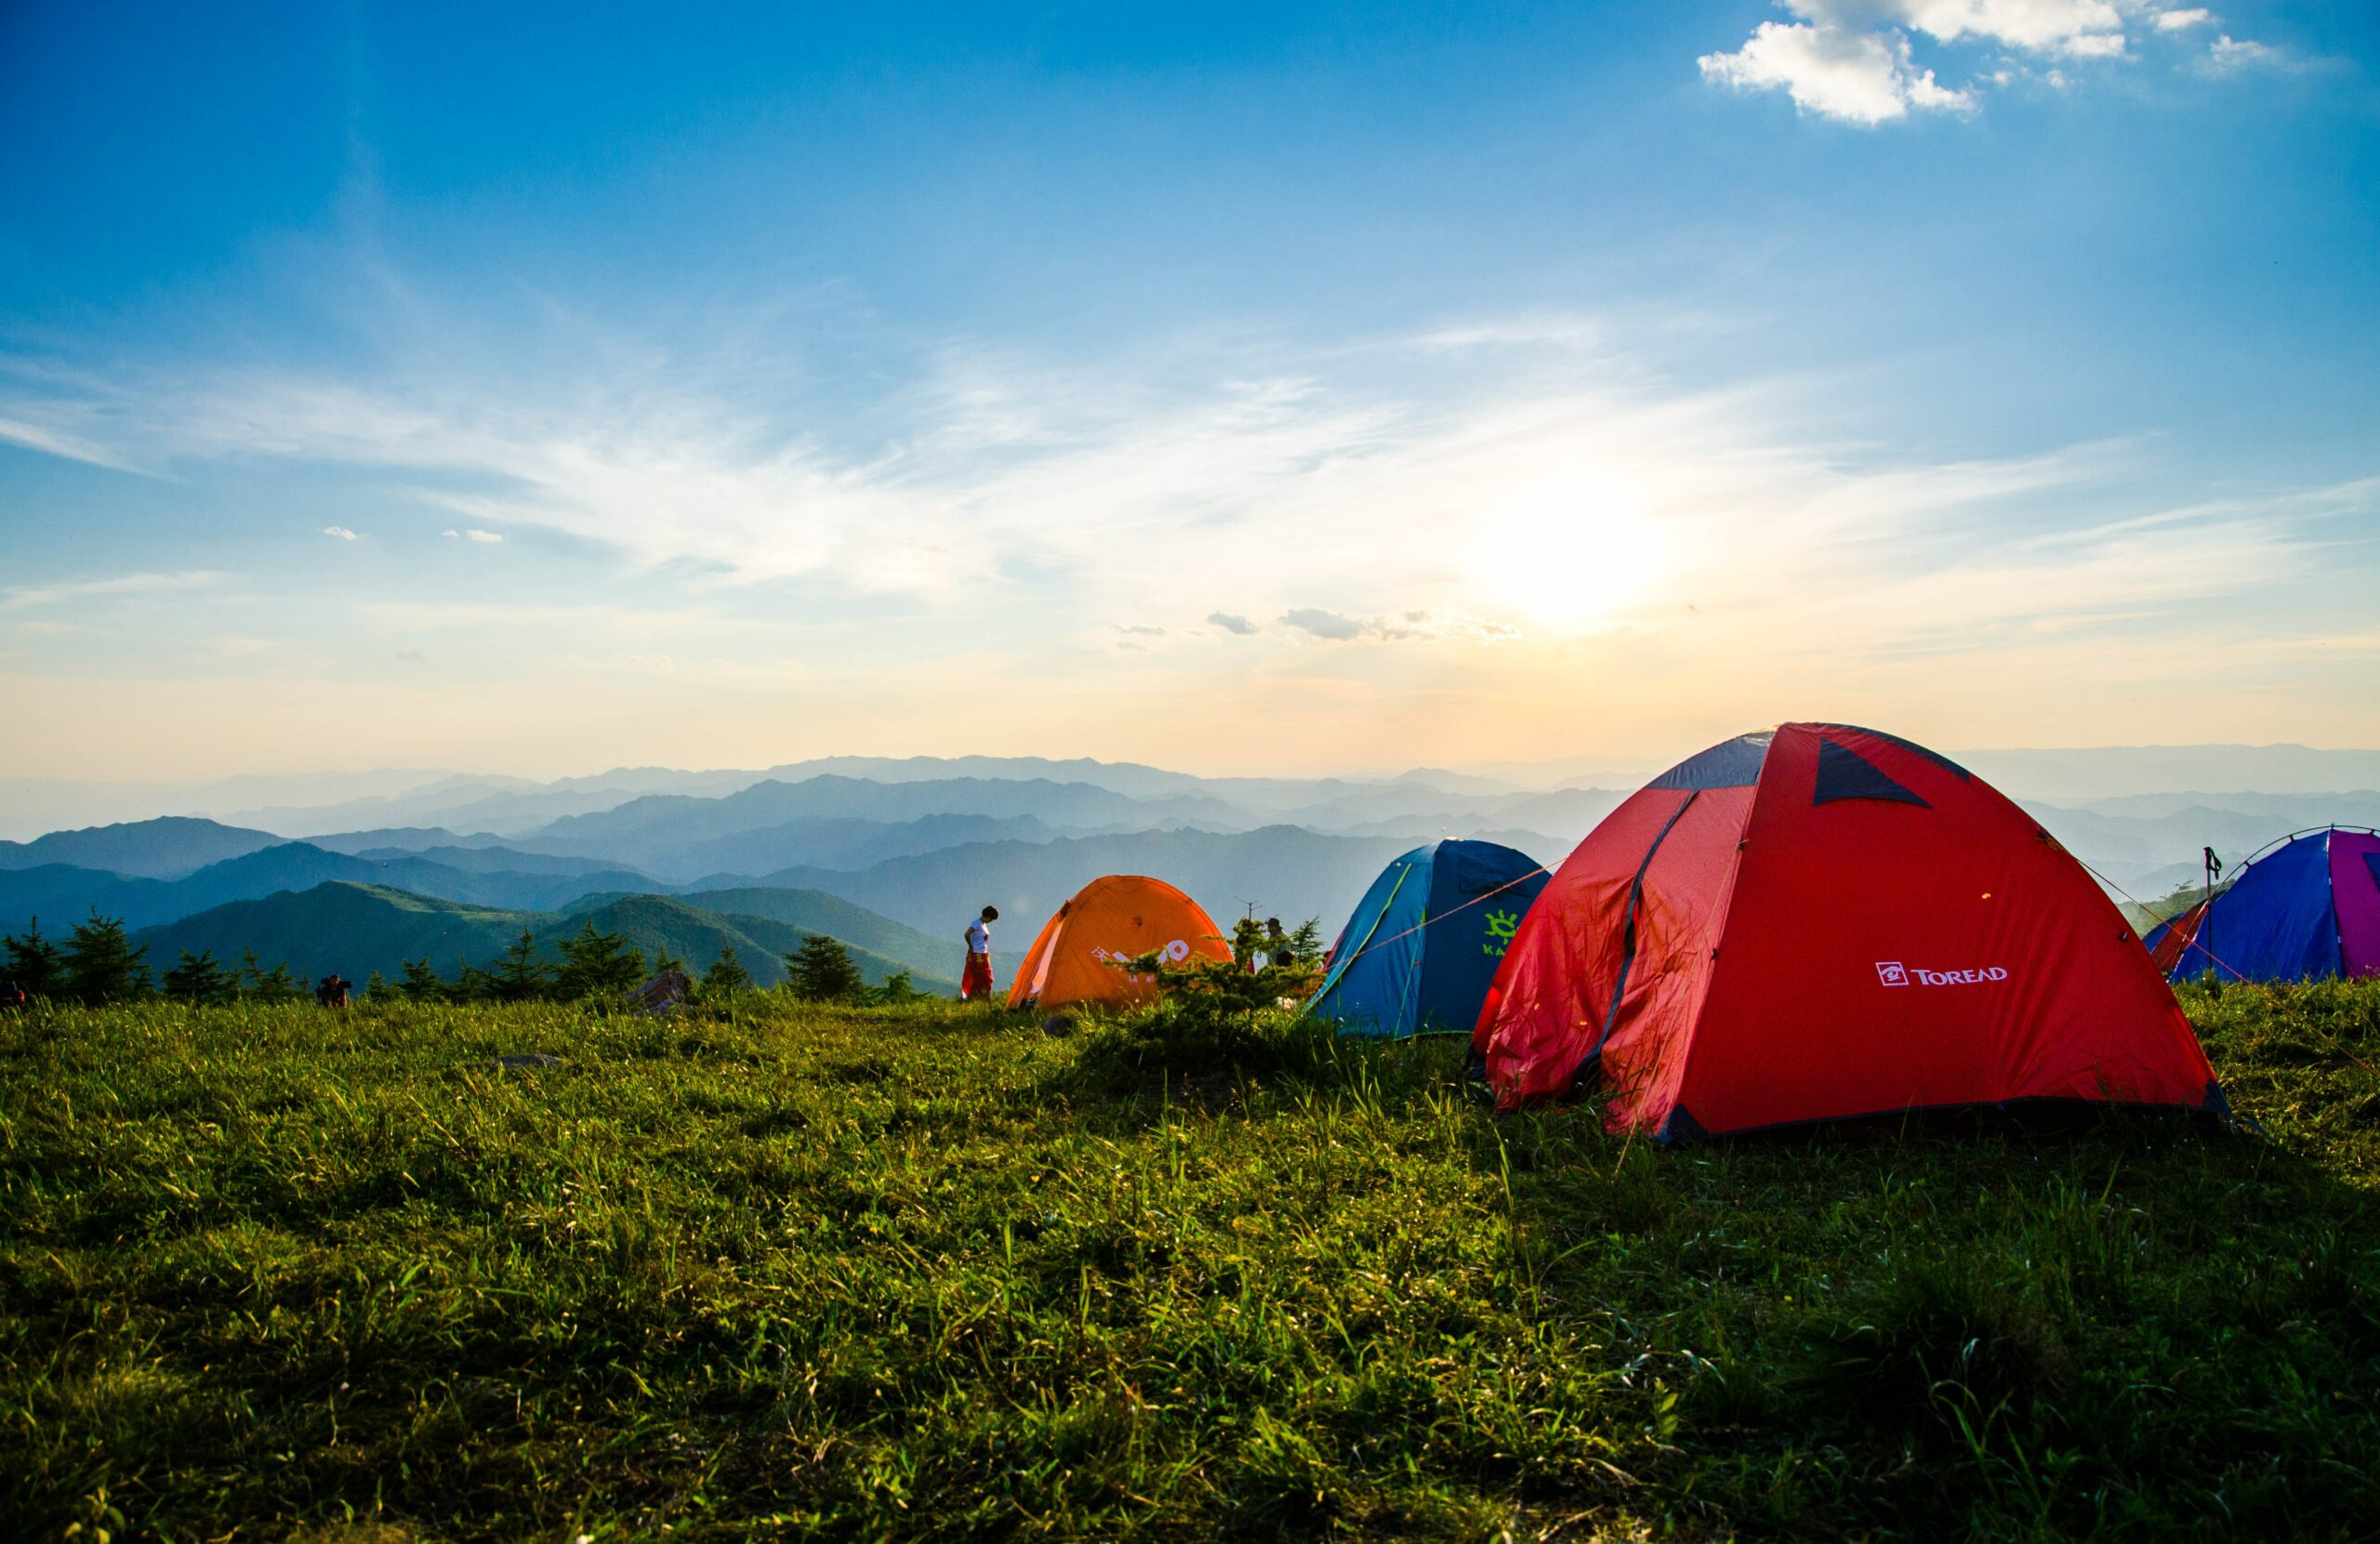 Humano Saludo Inevitable Lugares increíbles para disfrutar del camping en familia